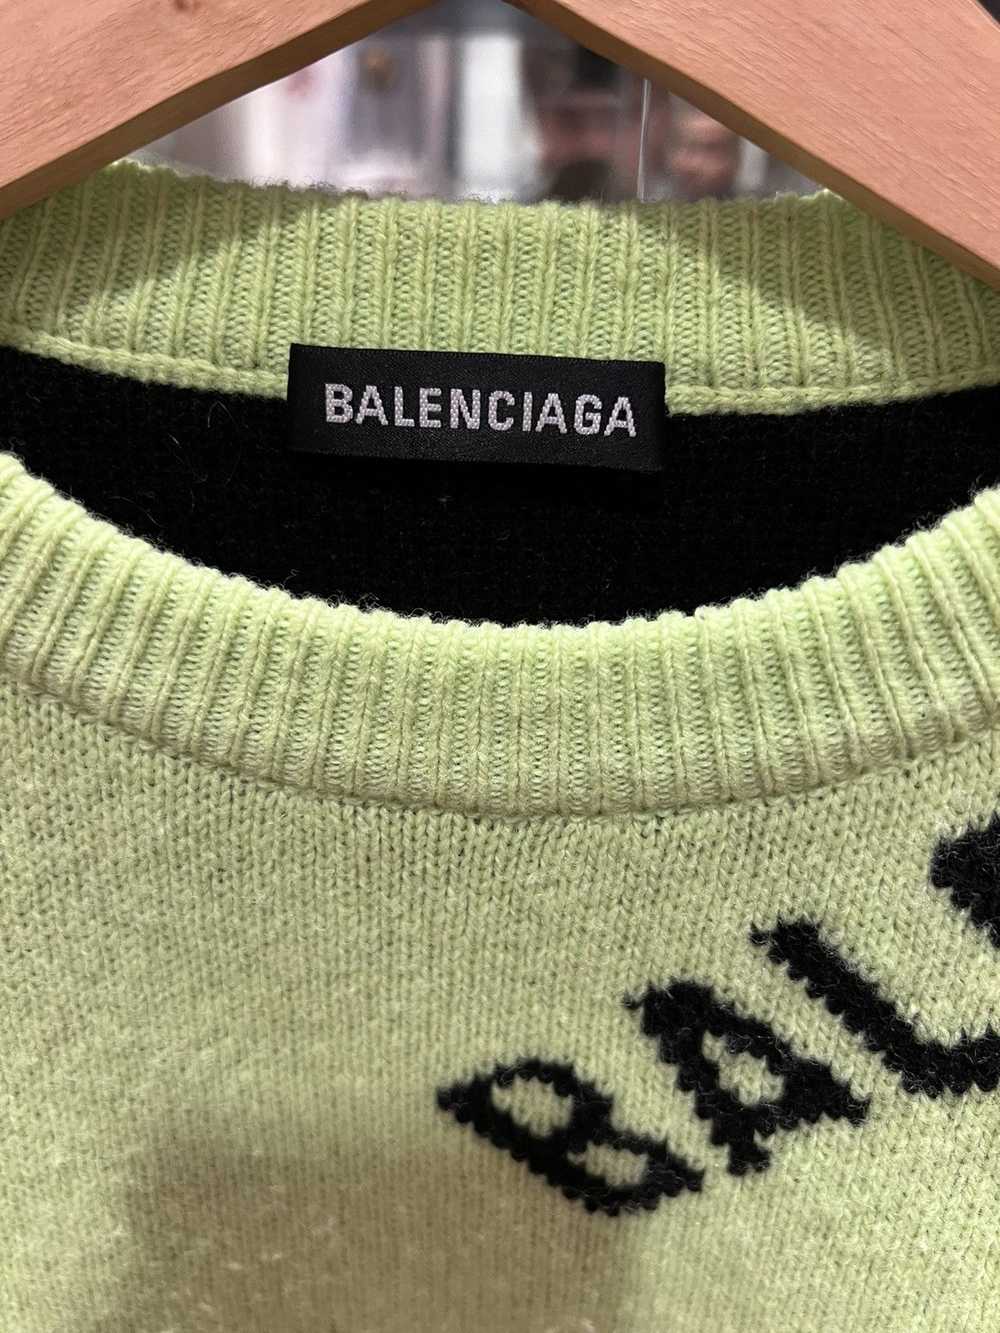 Balenciaga Balenciaga all over print knit sweater - image 2